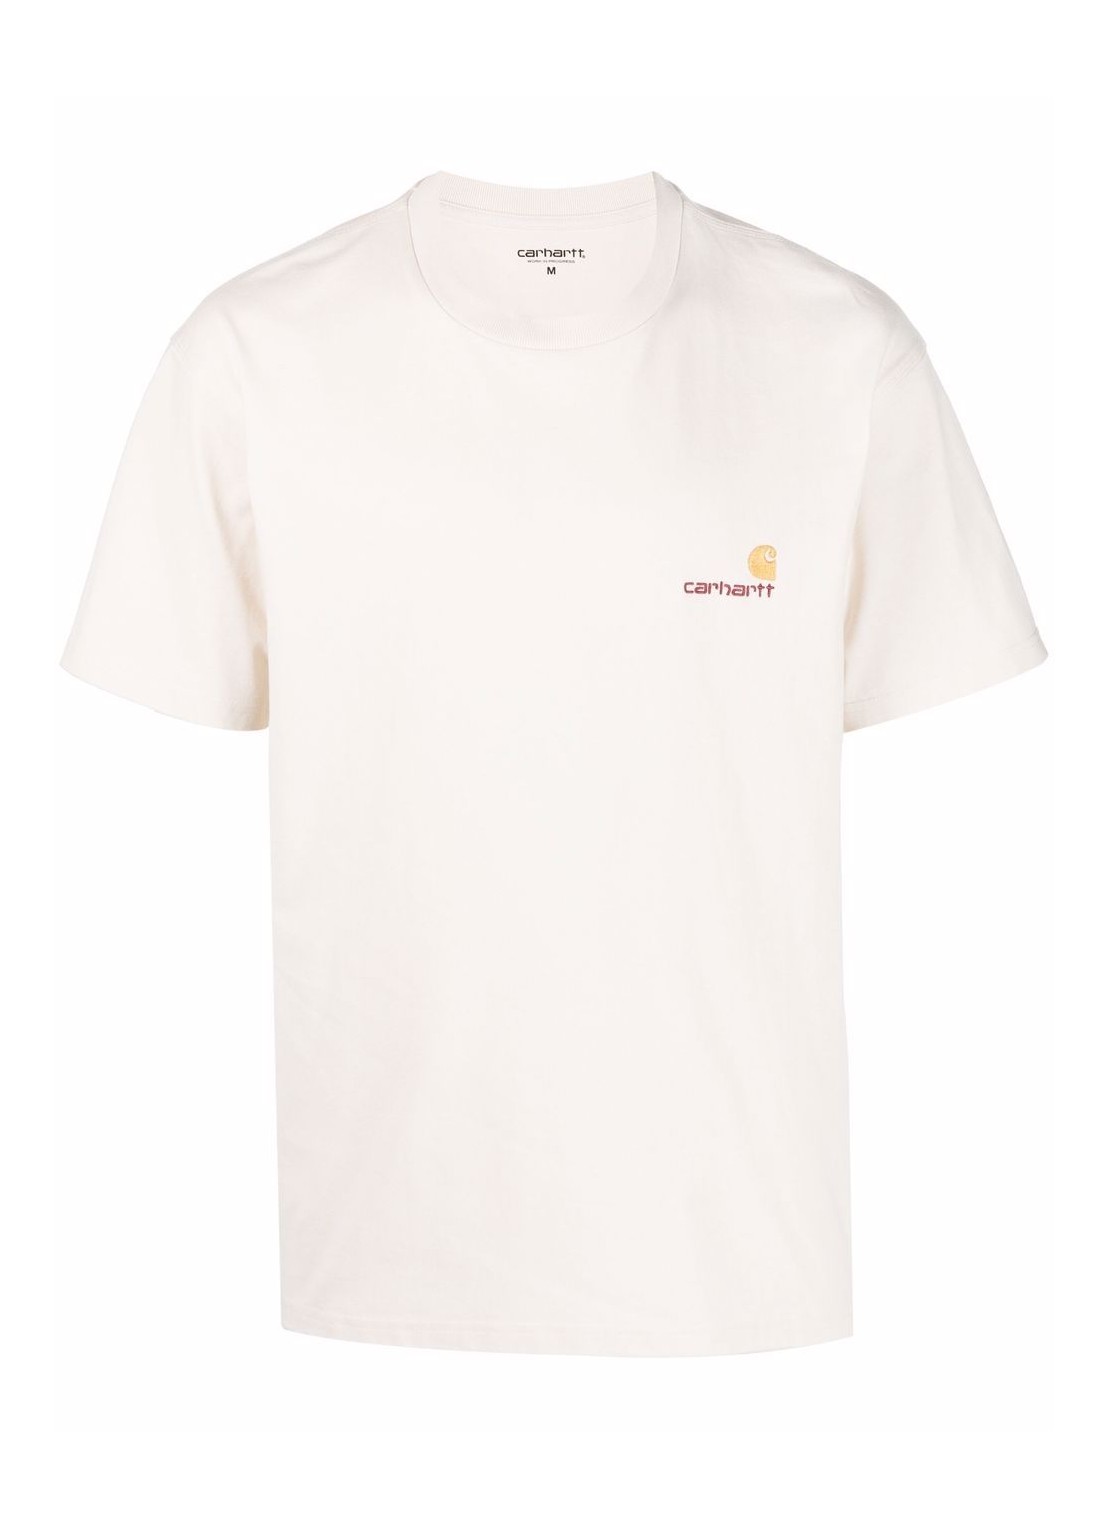 Camiseta carhartt t-shirt man s/s american script t-shir i029956 05xx talla XXL
 